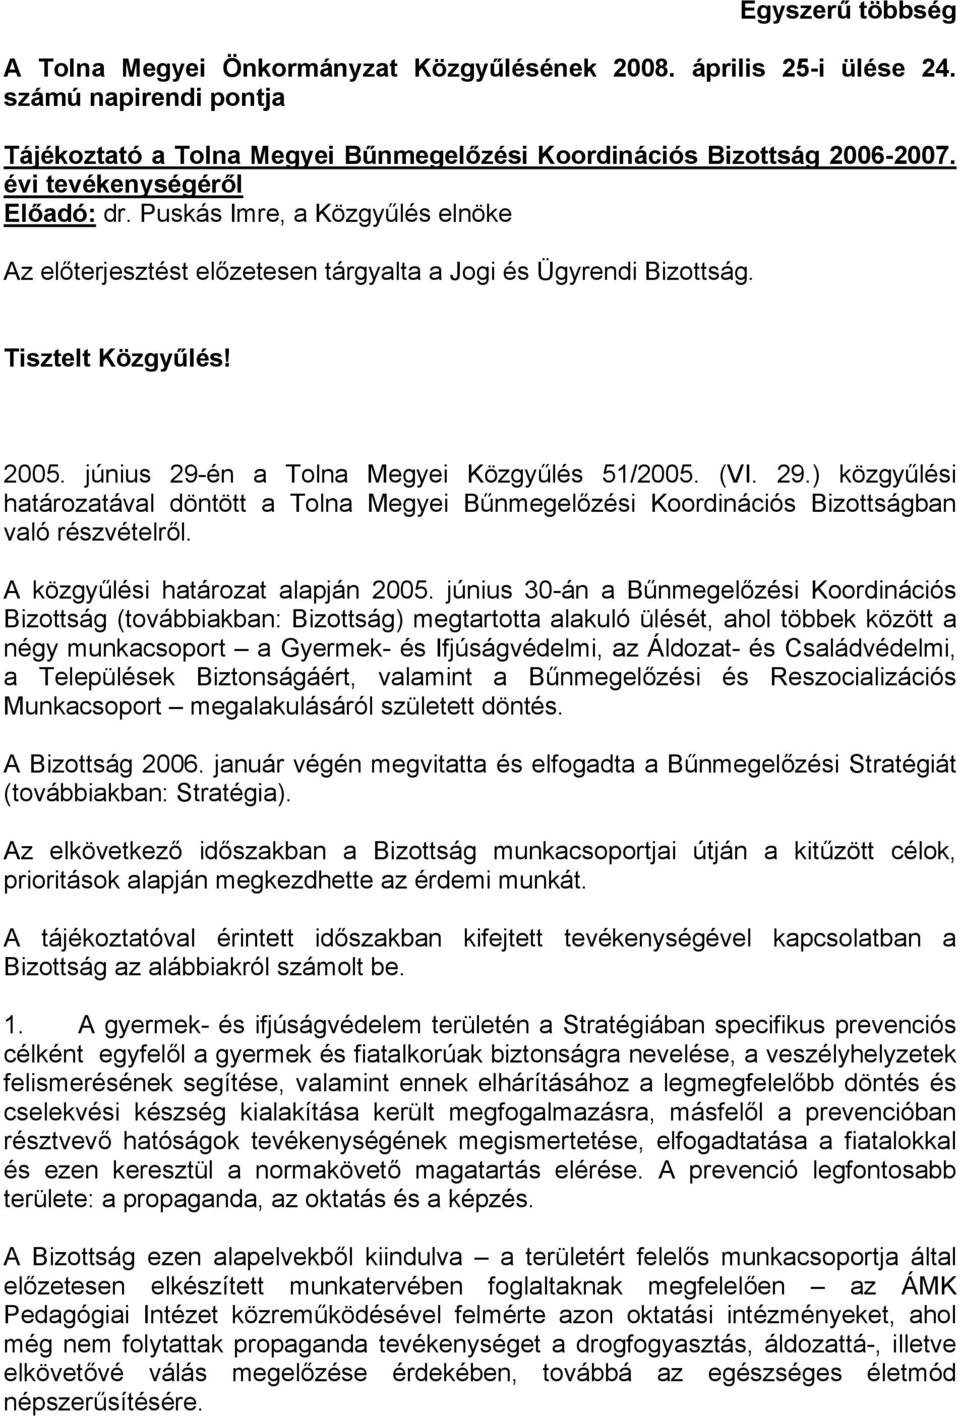 június 29-én a Tolna Megyei Közgyűlés 51/2005. (VI. 29.) közgyűlési határozatával döntött a Tolna Megyei Bűnmegelőzési Koordinációs Bizottságban való részvételről. A közgyűlési határozat alapján 2005.